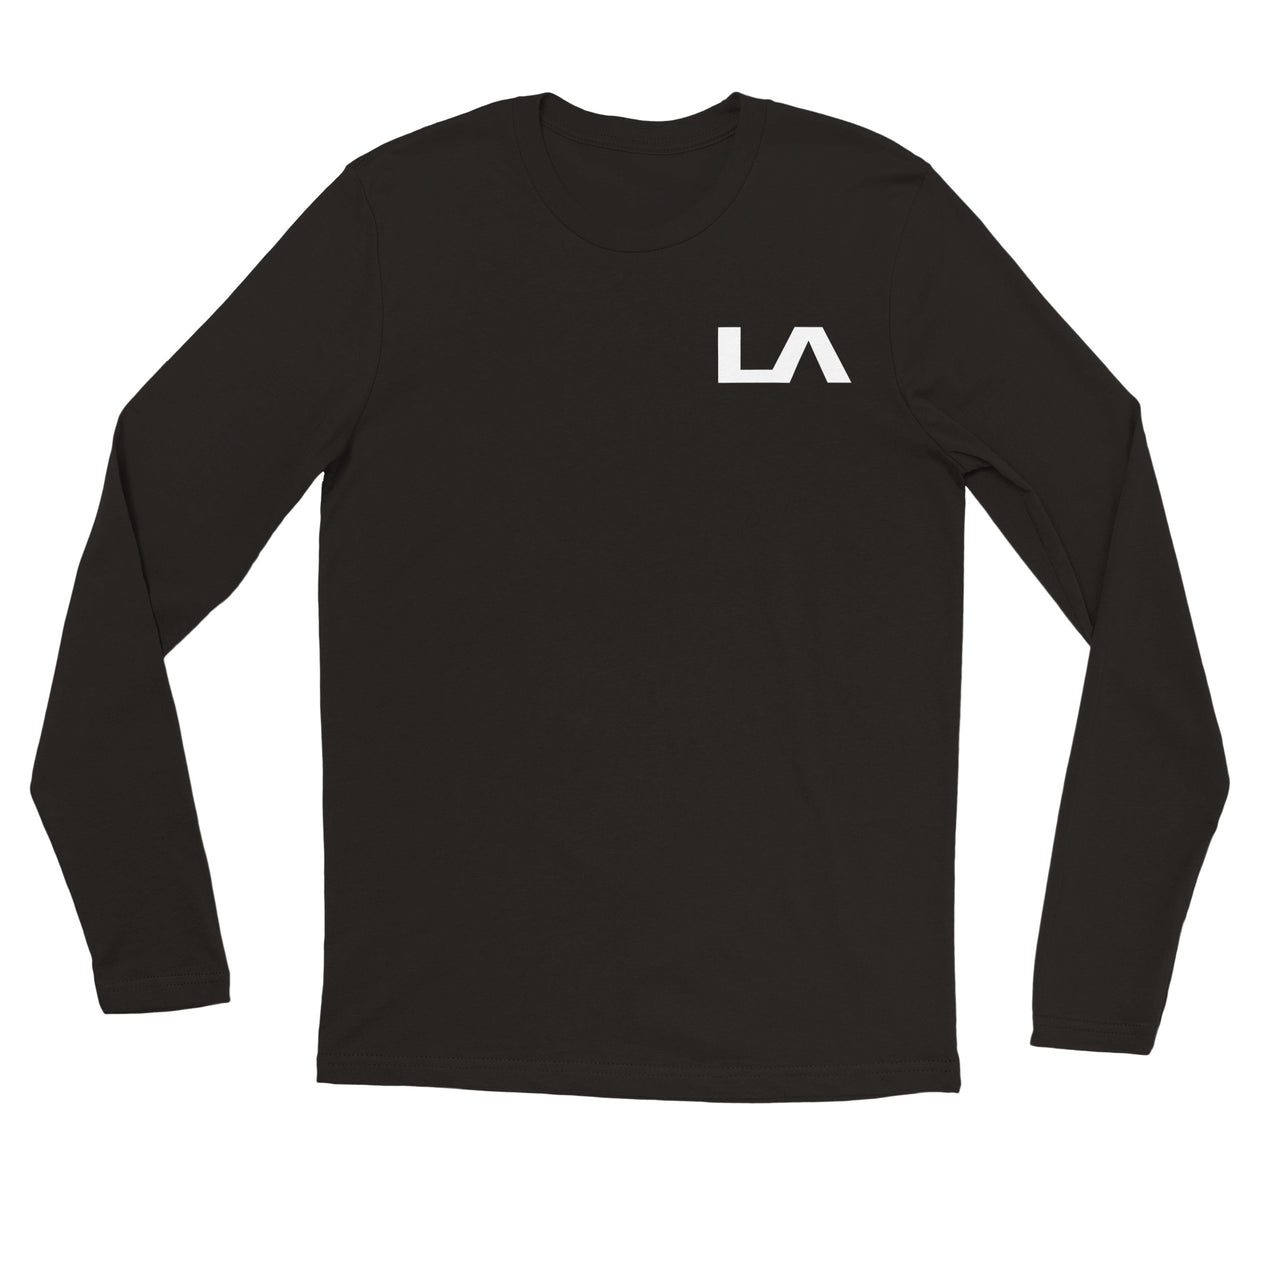 LA by LA Muscle Premium Unisex Long Sleeve T-shirt